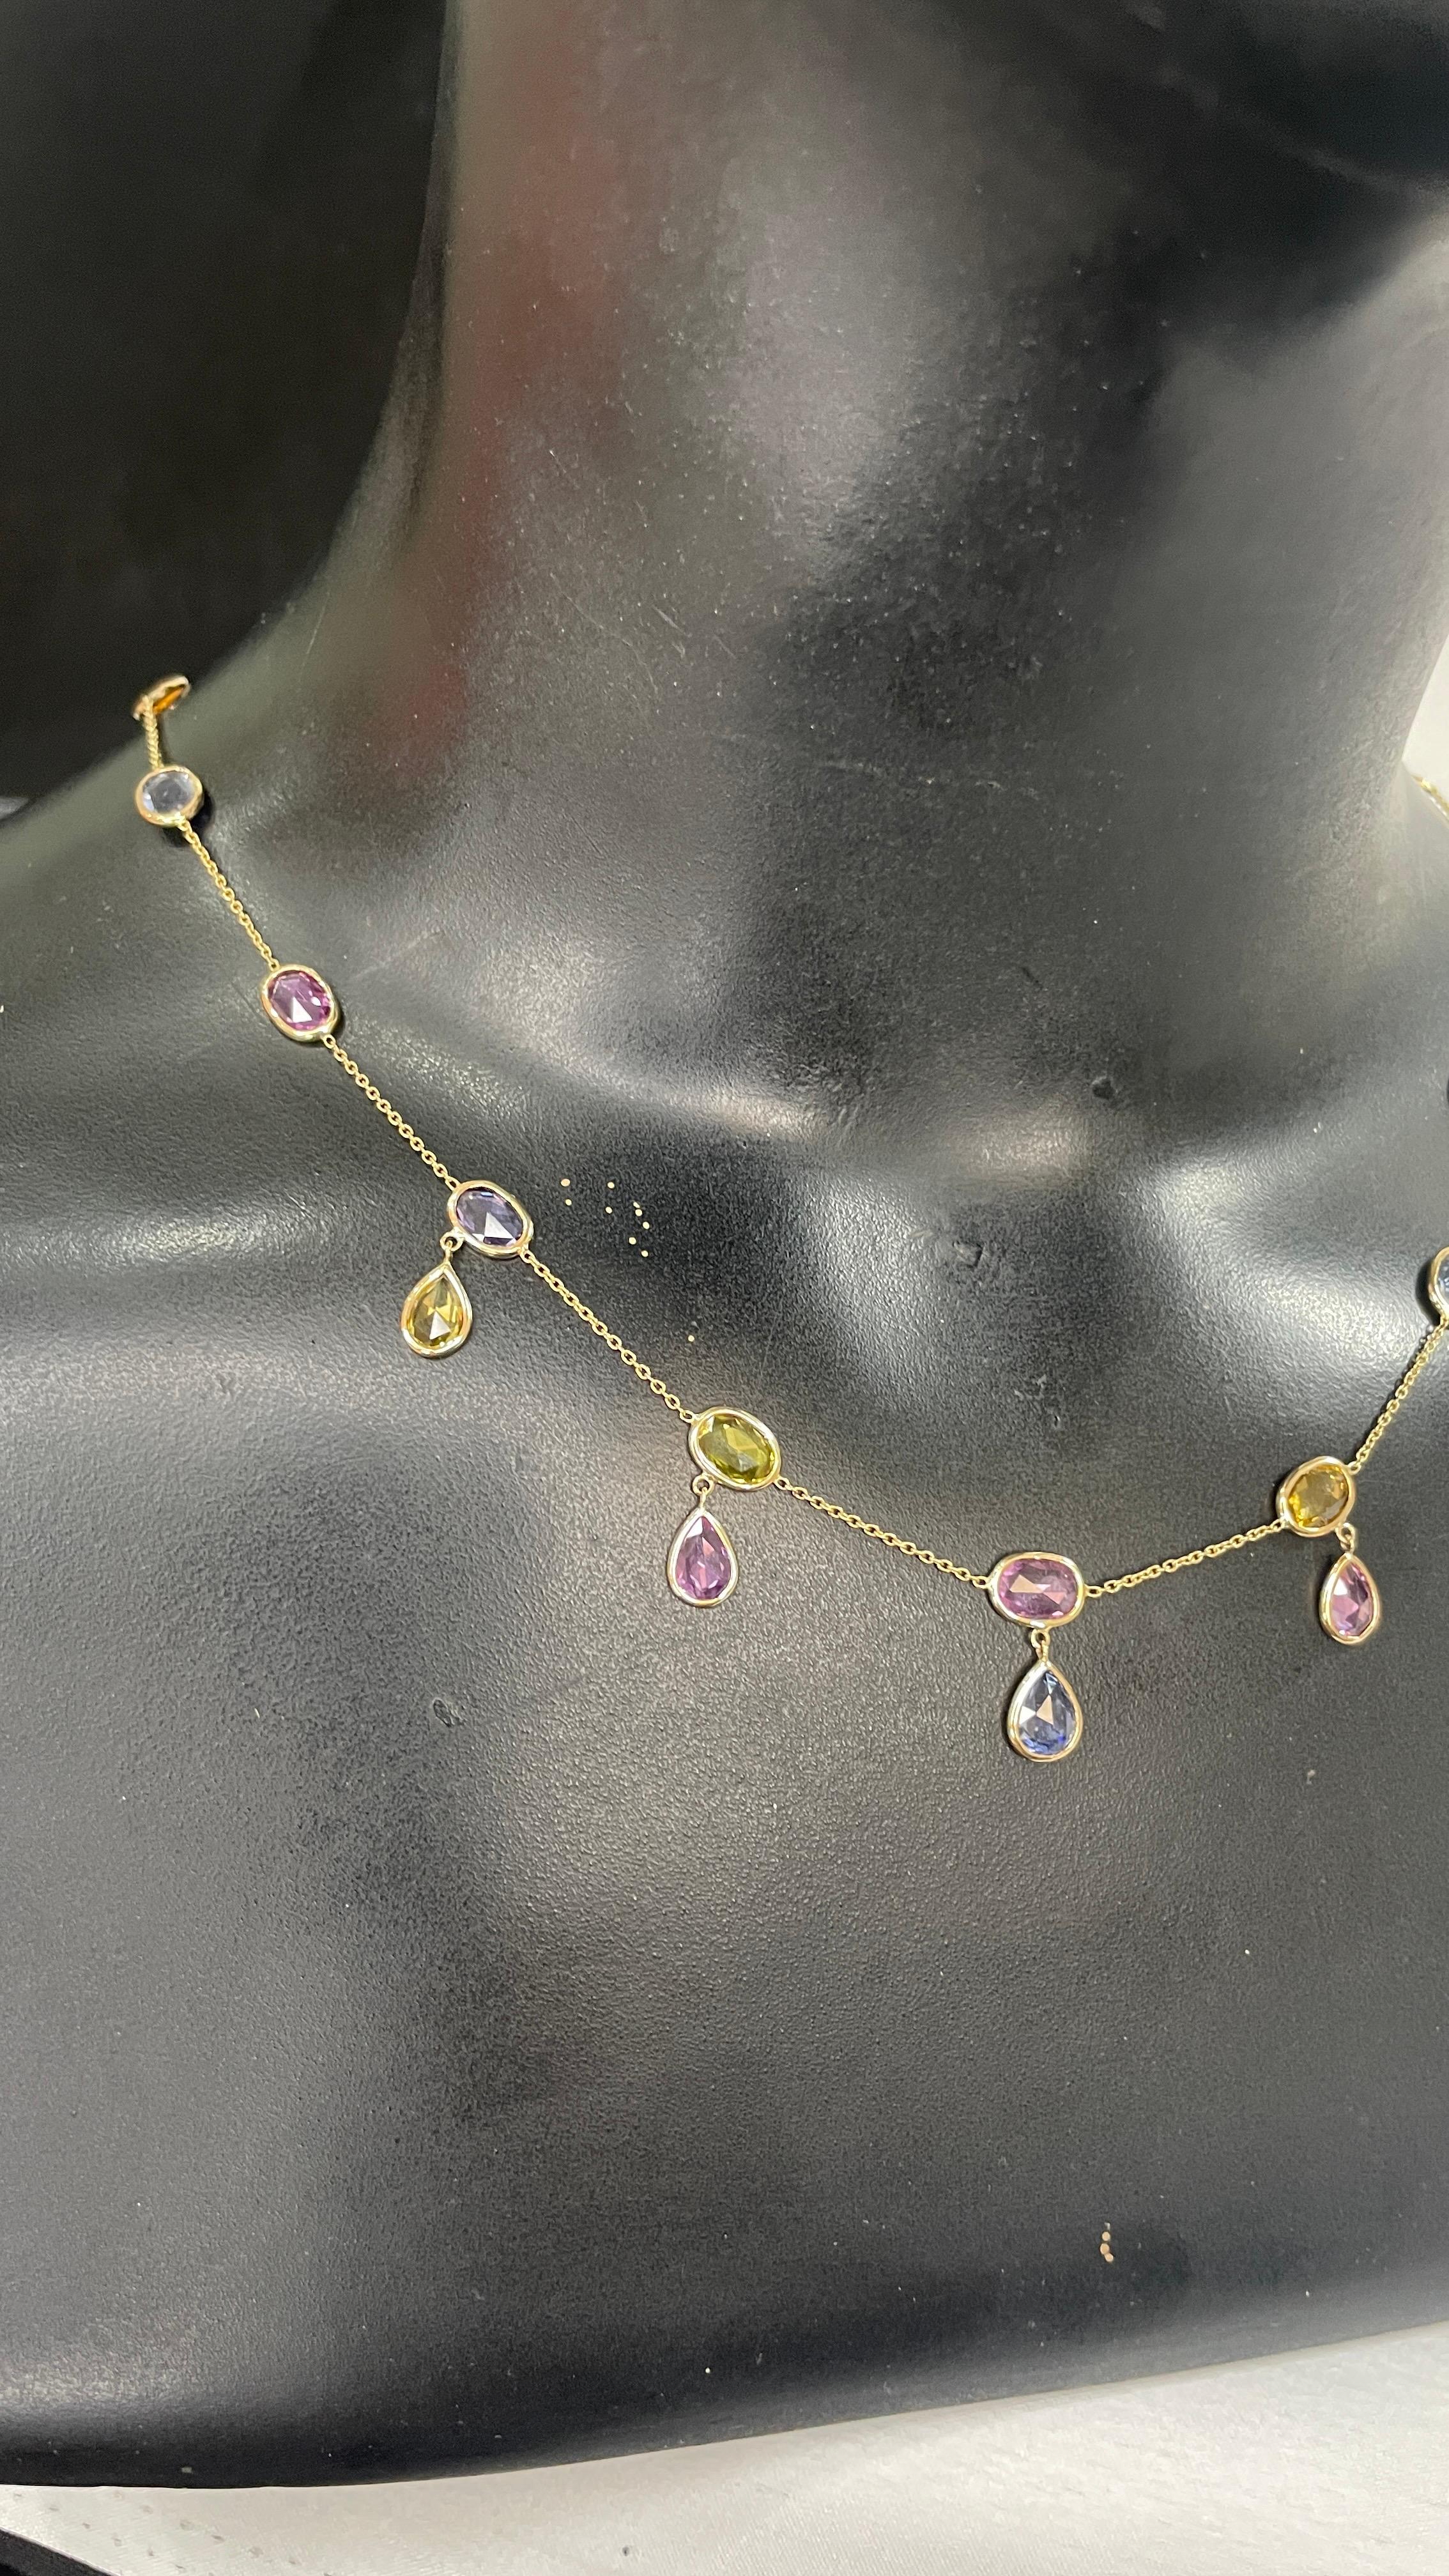 Multi-Edelstein-Halskette aus 18 Karat Gold, besetzt mit ovalen Saphiren im Birnenschliff.
Ergänzen Sie Ihren Look mit dieser eleganten Kette mit mehreren Edelsteinen und einer Tropfenkette. Dieses atemberaubende Schmuckstück wertet einen